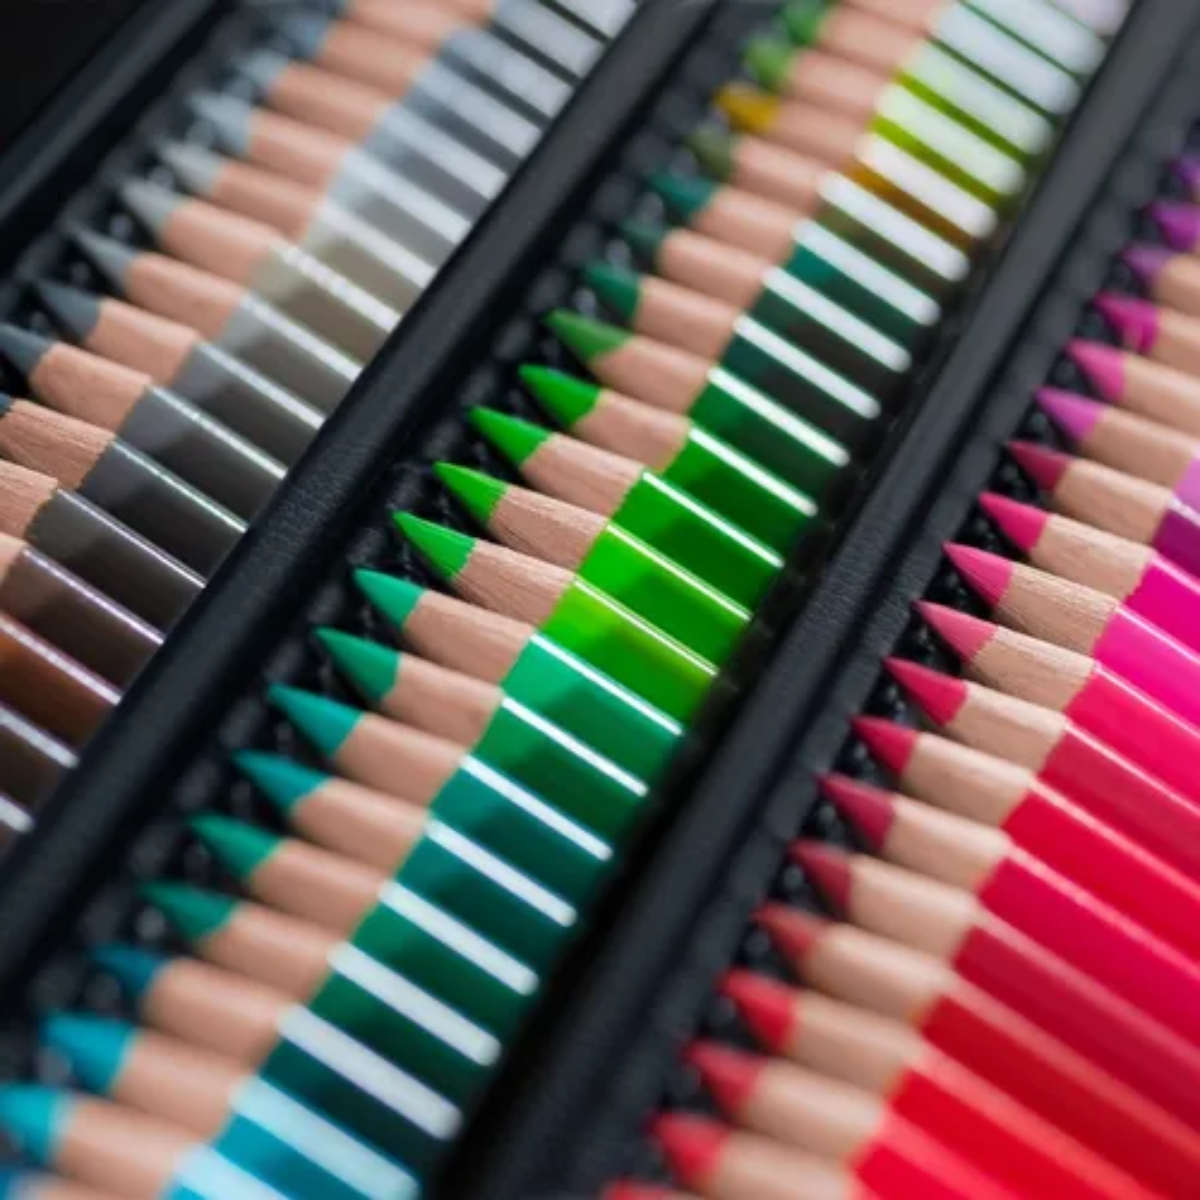 Faber-Castell Polychromos - Lápices de Colores (120 colores Disponibles)